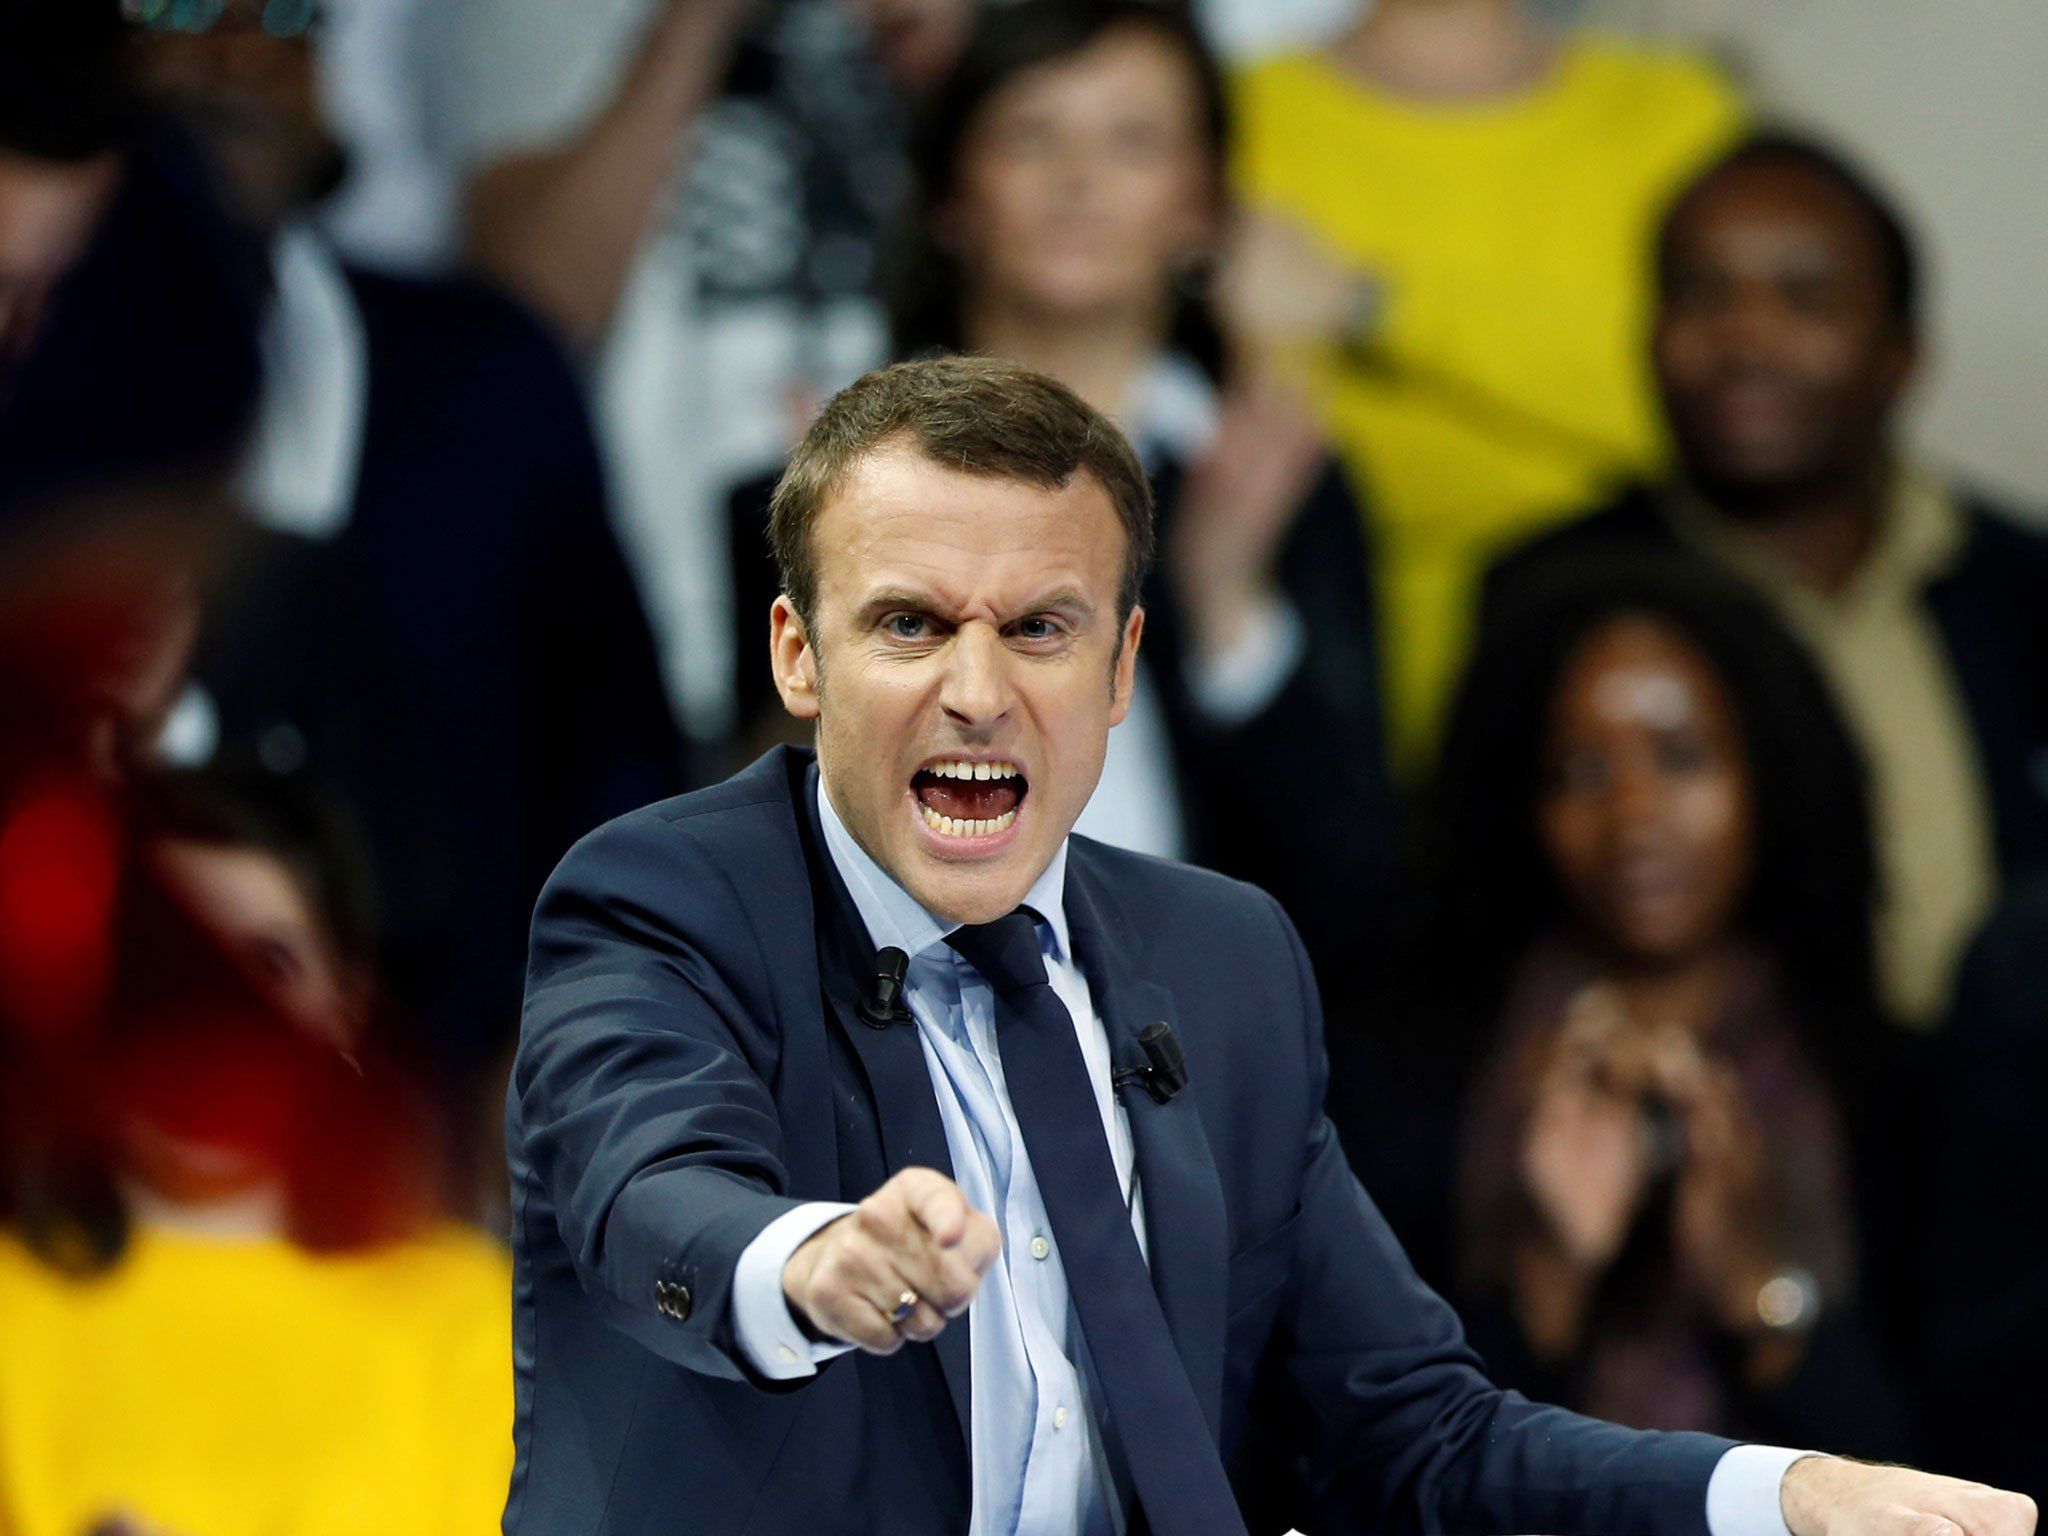 best Emmanuel Macron image on Pholder. Emmanuel Macron, France and Pics